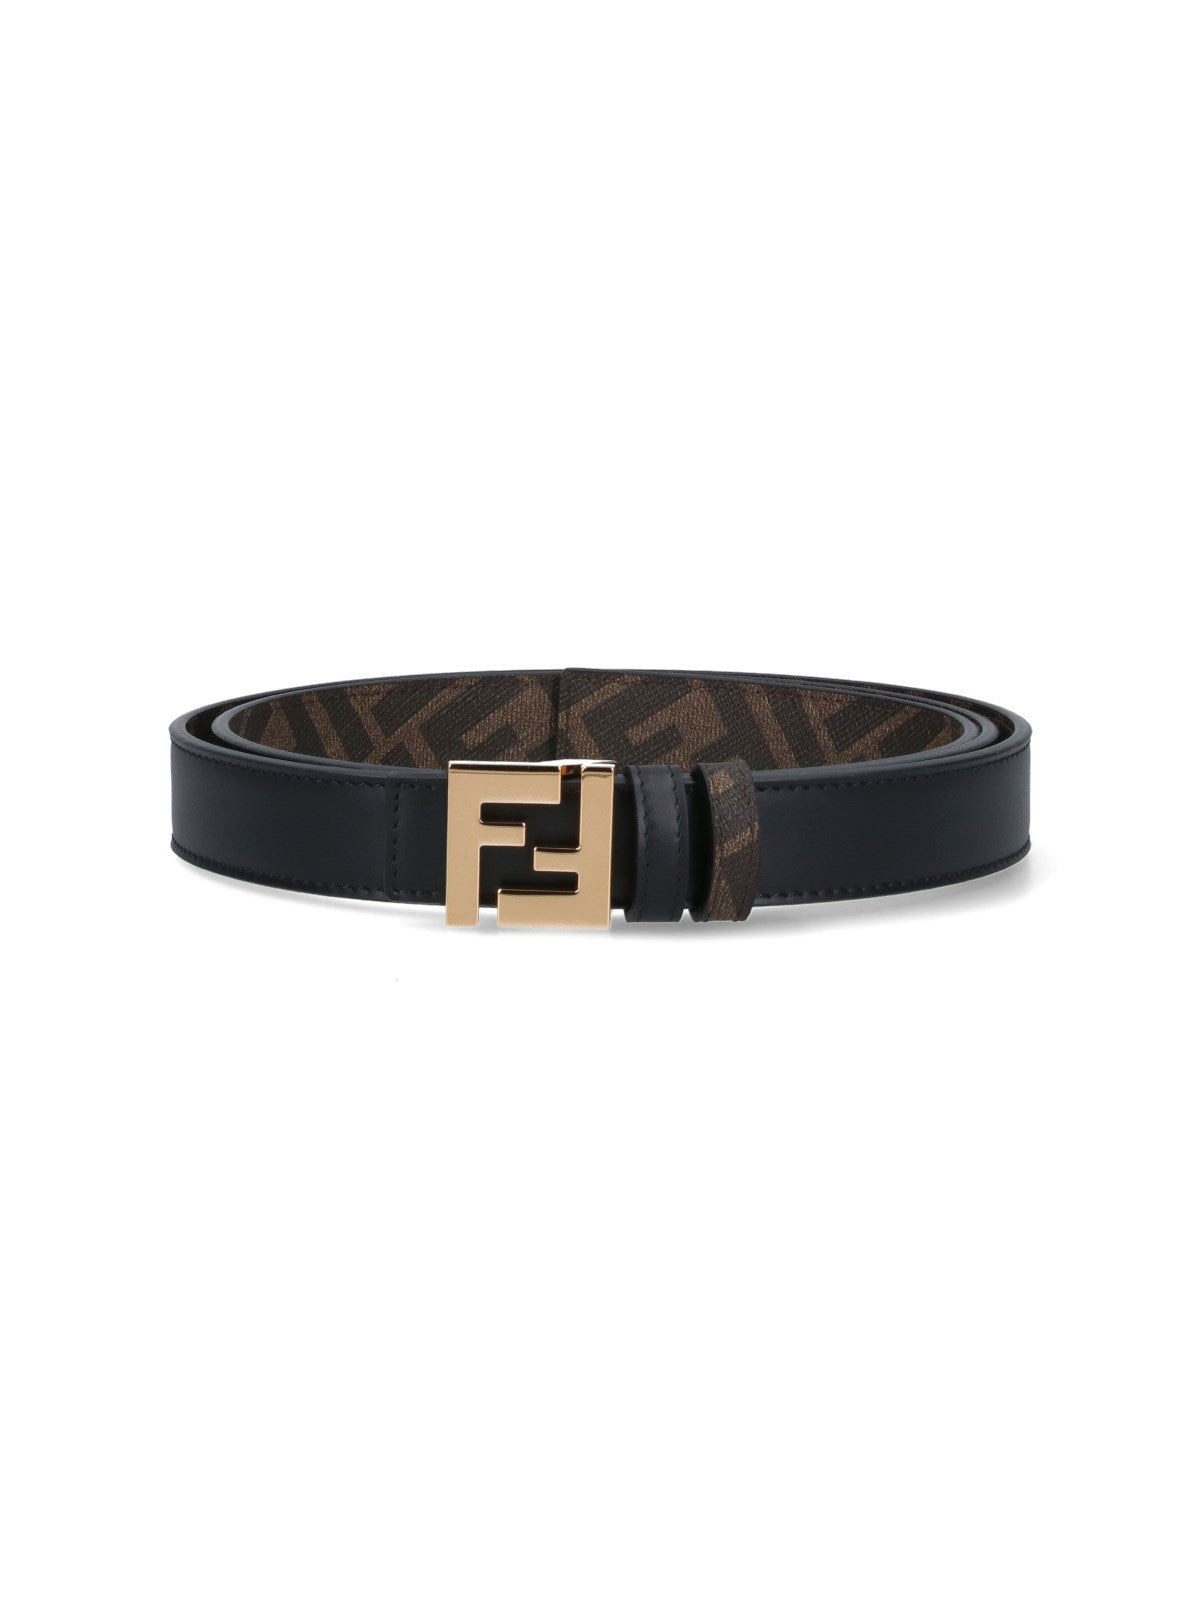 Fendi Cintura reversibile "ff square"-cinture-Fendi-Cintura reversibile Fendi "ff square", in pelle nera da un lato, in tela "ff" dall'altro, fibbia logo dorata, regolabile.-Dresso